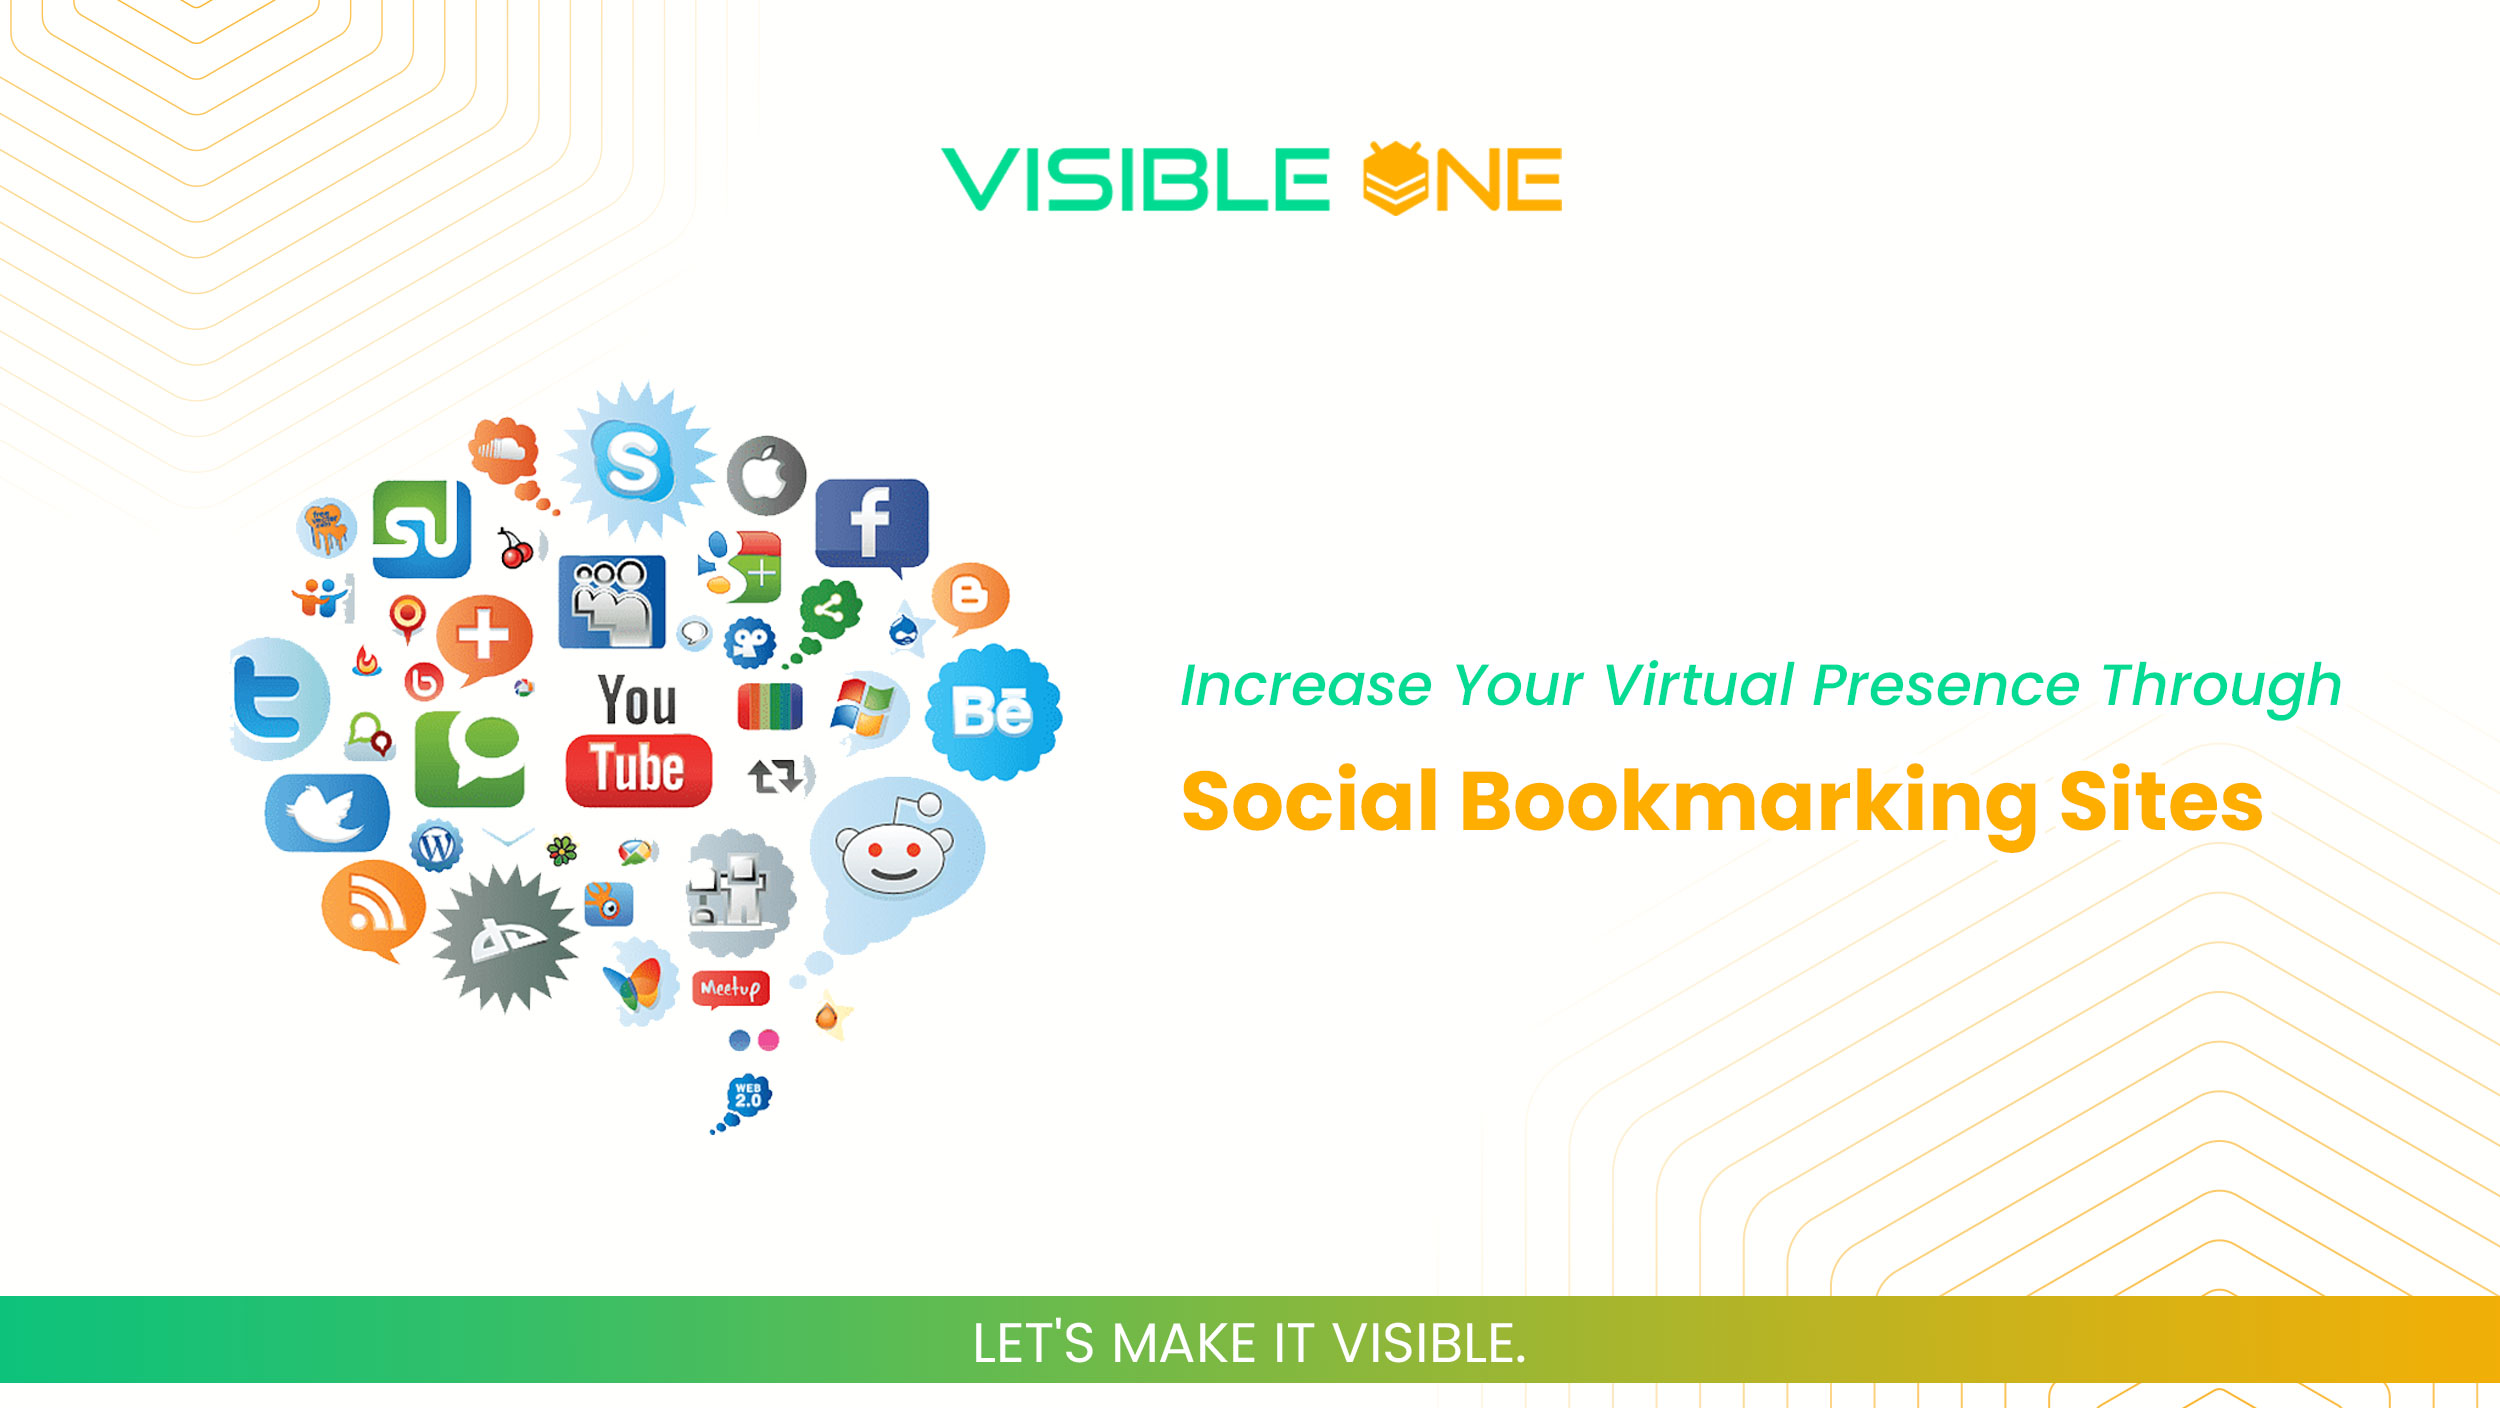 Increase Your Virtual Presence Through Social Bookmarking Sites